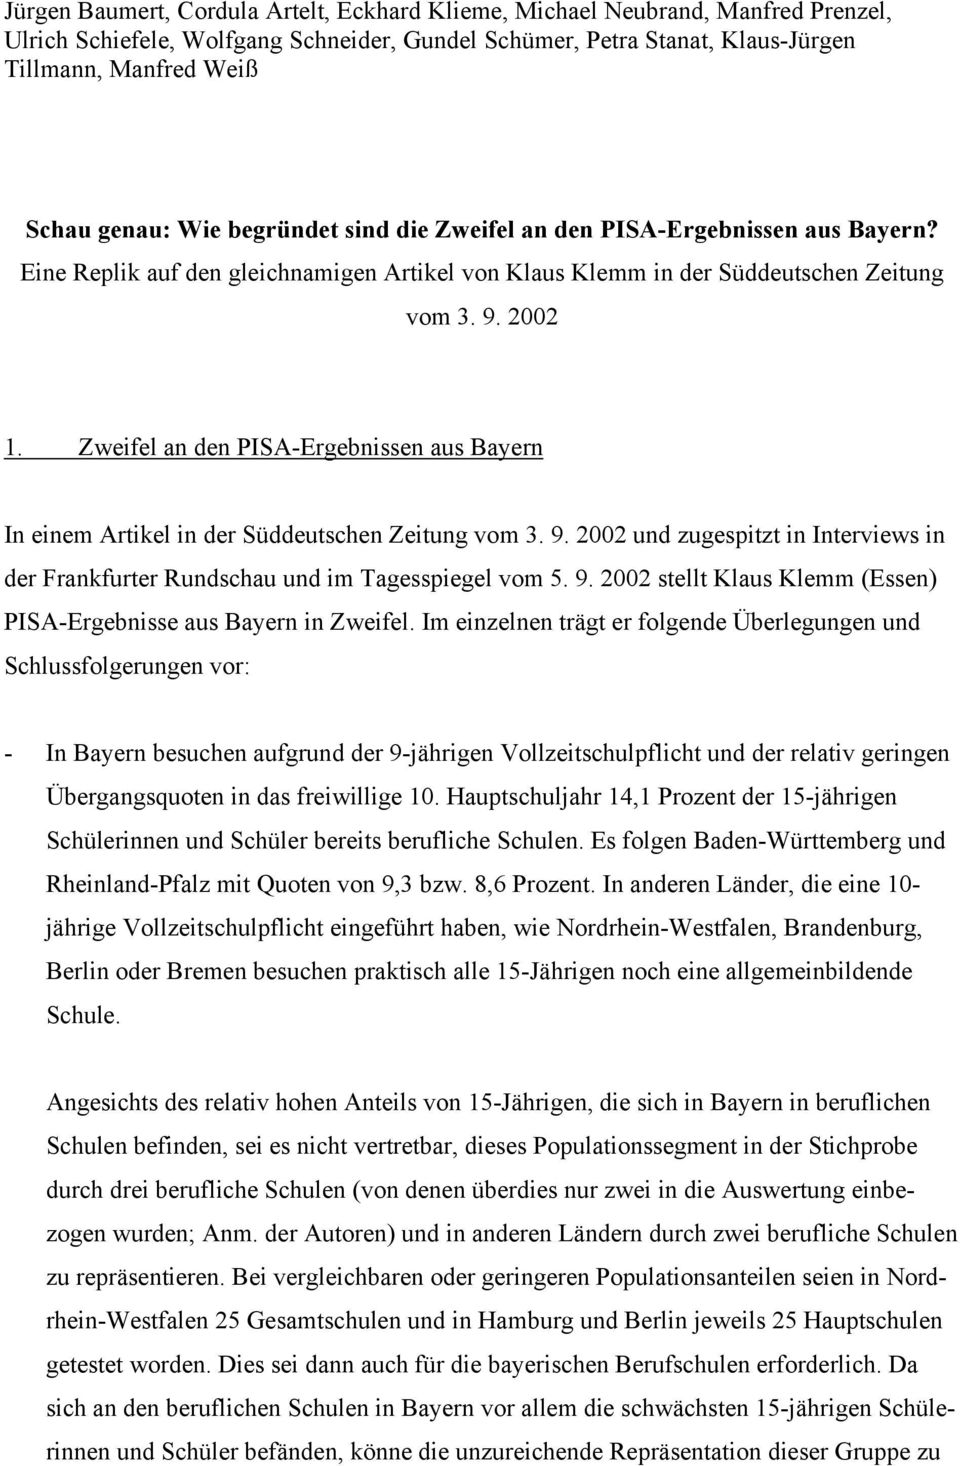 Zweifel an den PISA-Ergebnissen aus Bayern In einem Artikel in der Süddeutschen Zeitung vom 3. 9. 2002 und zugespitzt in Interviews in der Frankfurter Rundschau und im Tagesspiegel vom 5. 9. 2002 stellt Klaus Klemm (Essen) PISA-Ergebnisse aus Bayern in Zweifel.